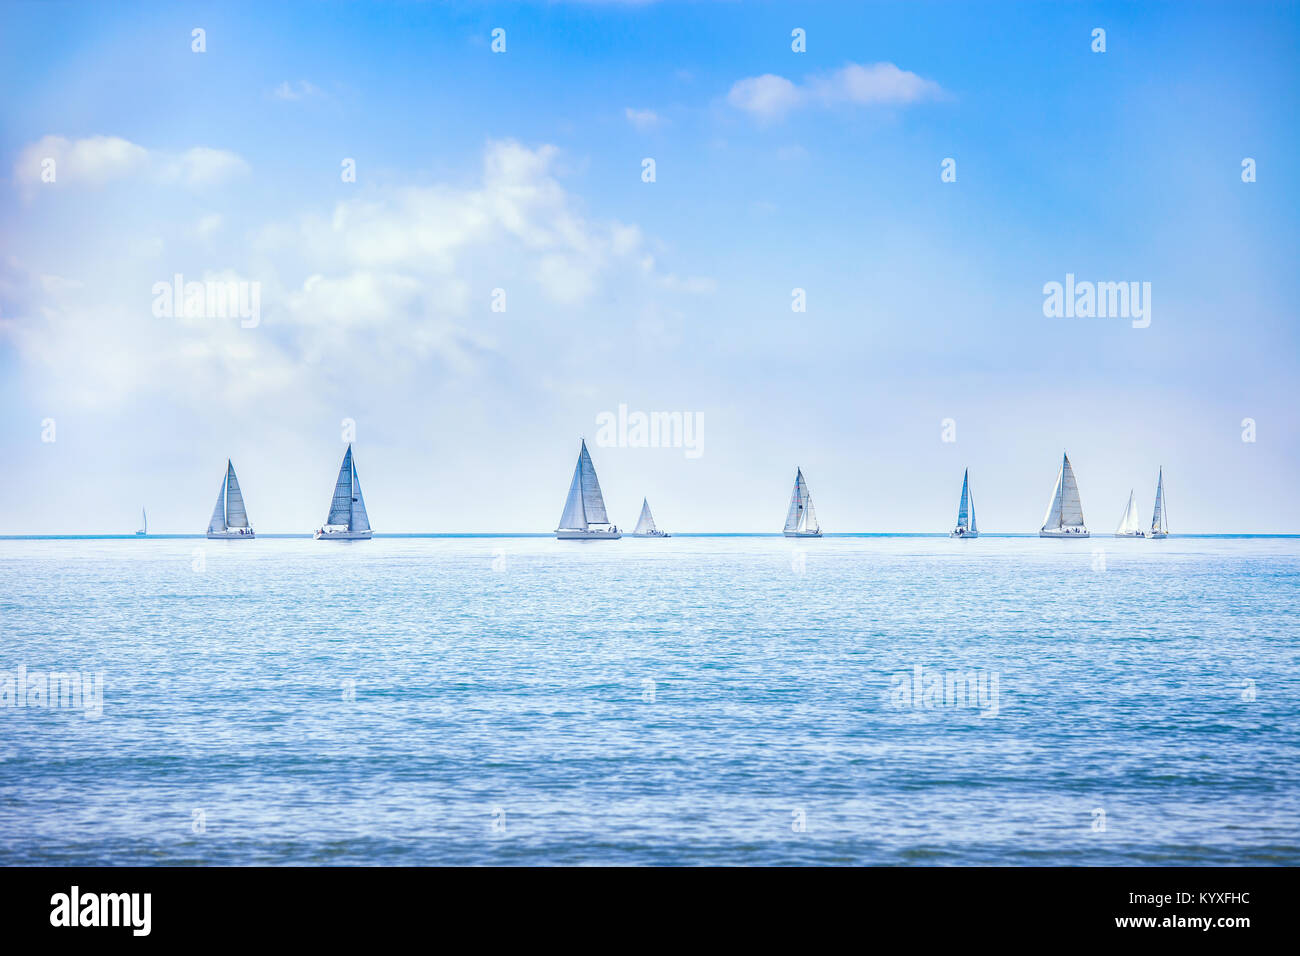 Segelboot Yacht oder Segelboot Gruppe Regatta-Rennen auf dem Meer oder Ozean Wasser. Panorama-Blick. Stockfoto